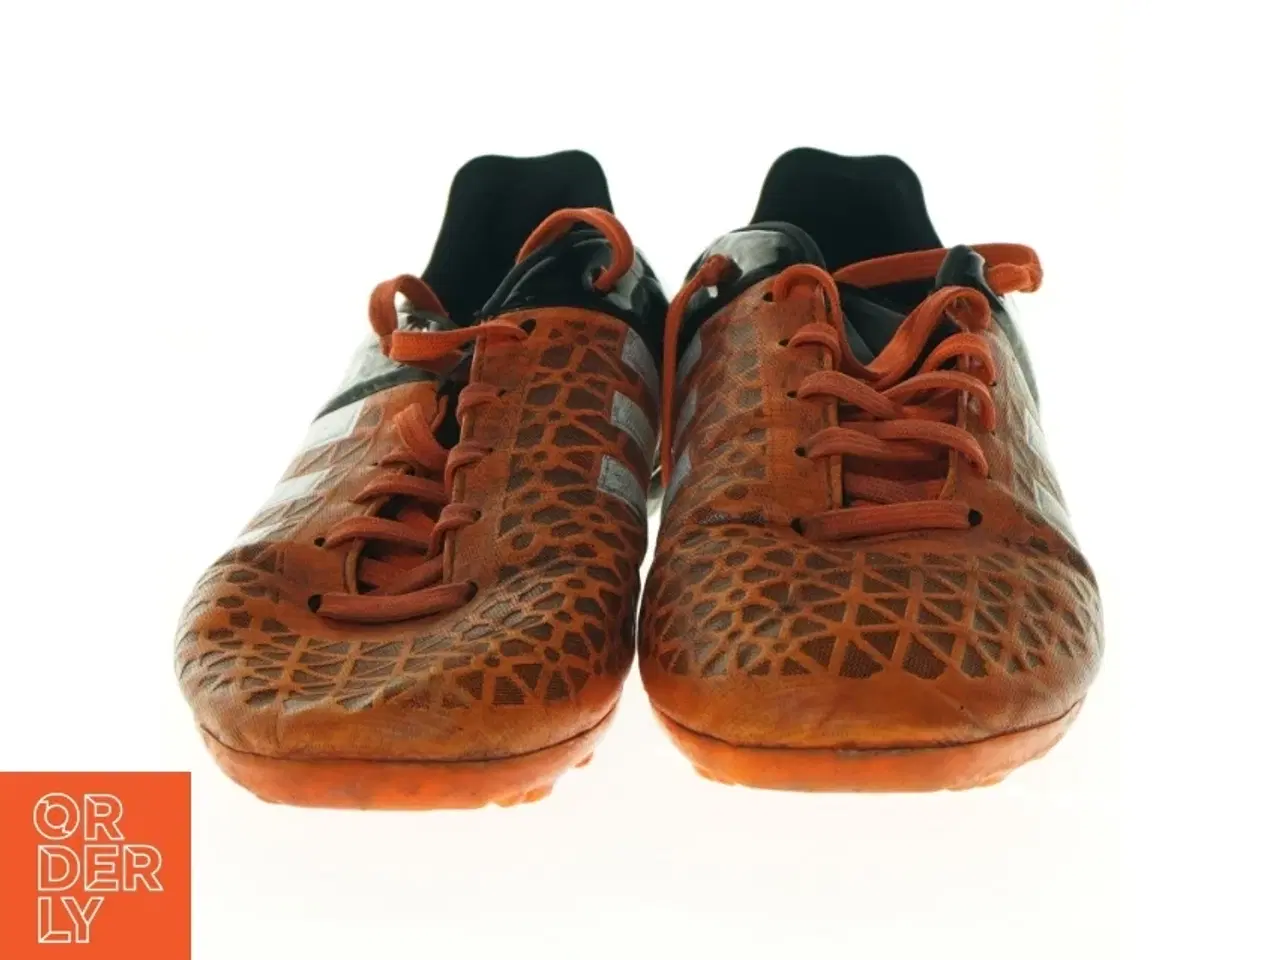 Billede 2 - Fodboldstøvler fra Adidas (str. 37 en halv)